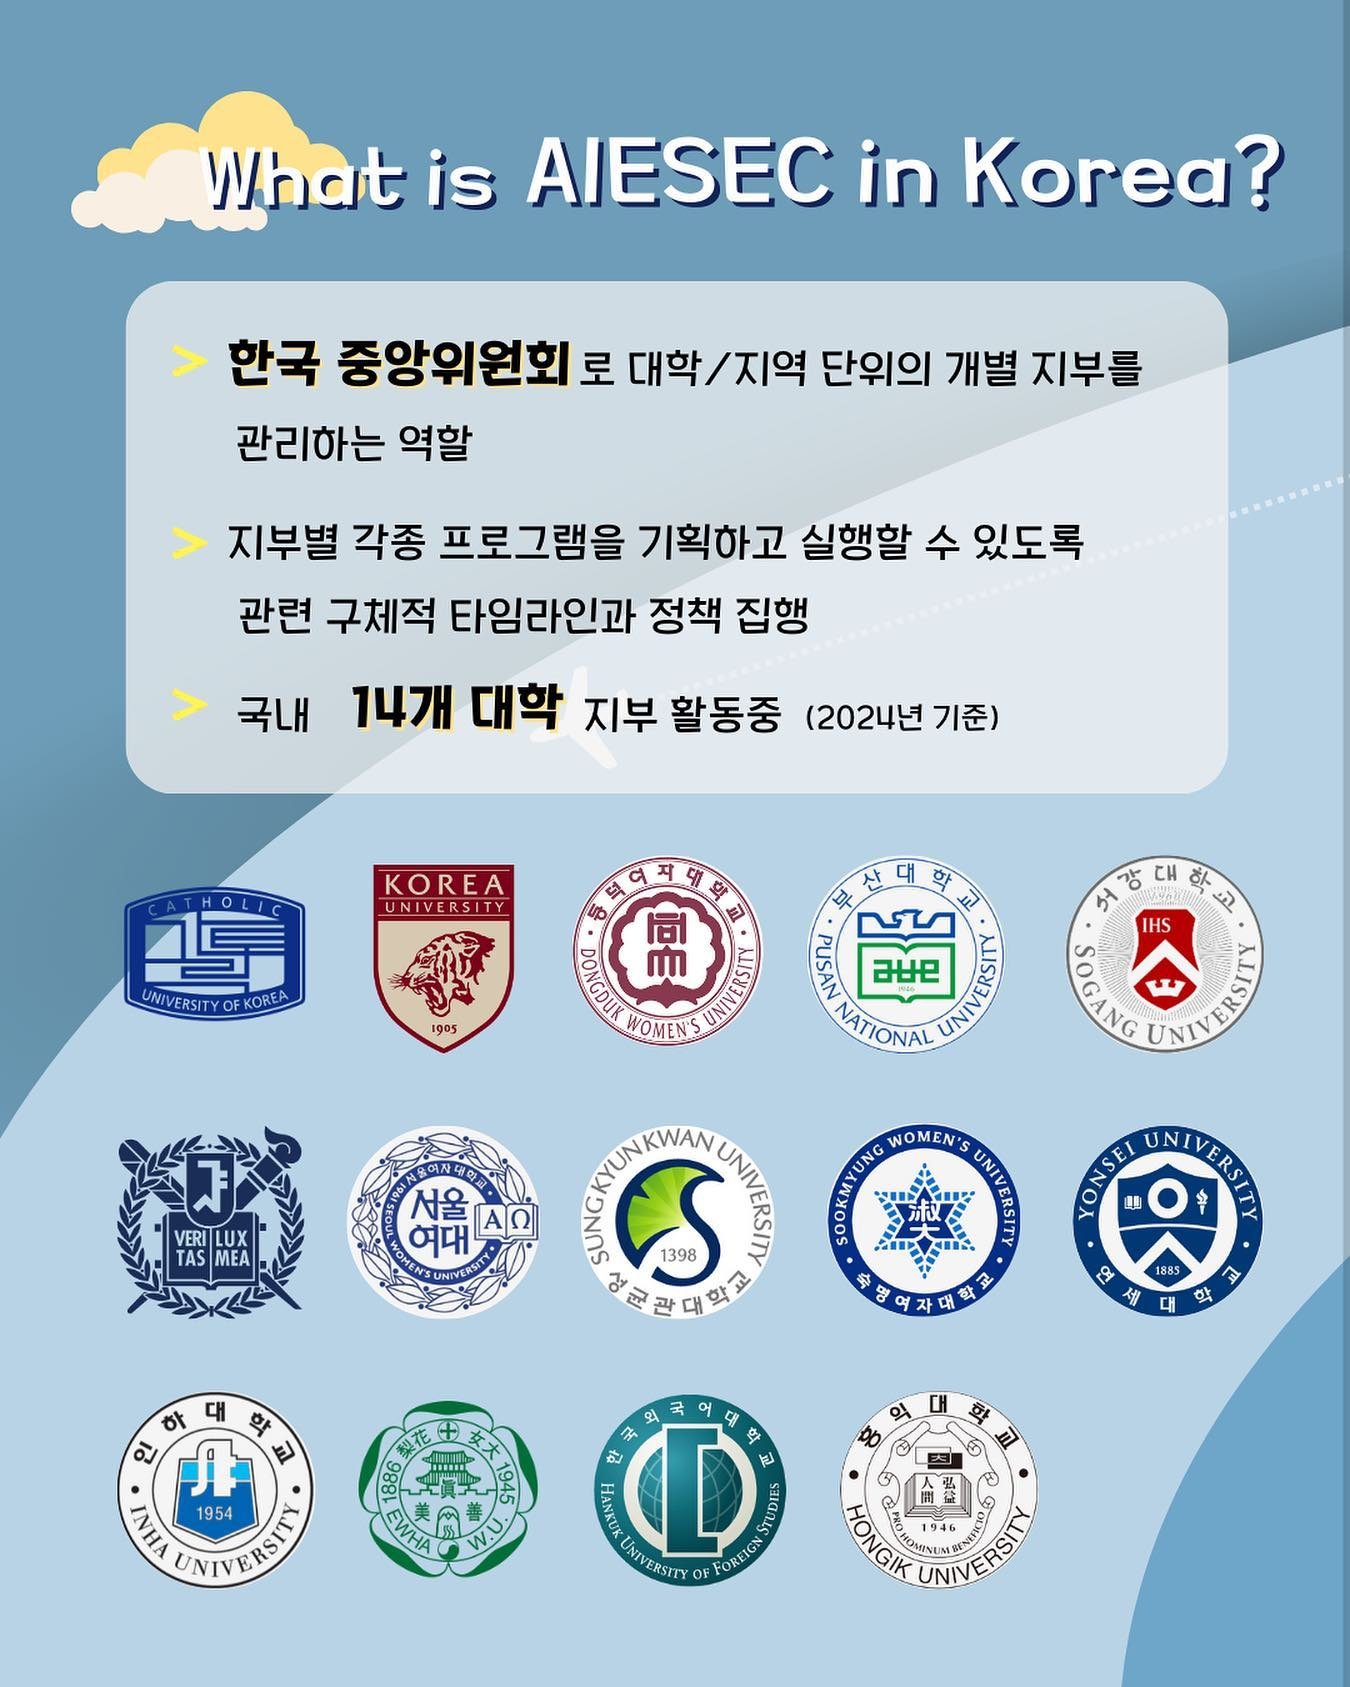 Q. What is &lsquo;AIESEC in Korea&rsquo;?
AIESEC in Korea는 한국 중앙위원회(MC: Member Cpmmitteee)로 
대학/지역 단위의 개별 지부(LC:Local Committee)들이 각종 프로그램을 기획하고 실행할 수 있도록 
구체적 타임라인과 정책을 만들어 소속 지부들을 관리하는 역할을 하고 있습니다❗️
​
한국에서는 전국 14개 대학들과 함께 하고 있습니다.
#가톨릭대 #고려대 #동덕여대 